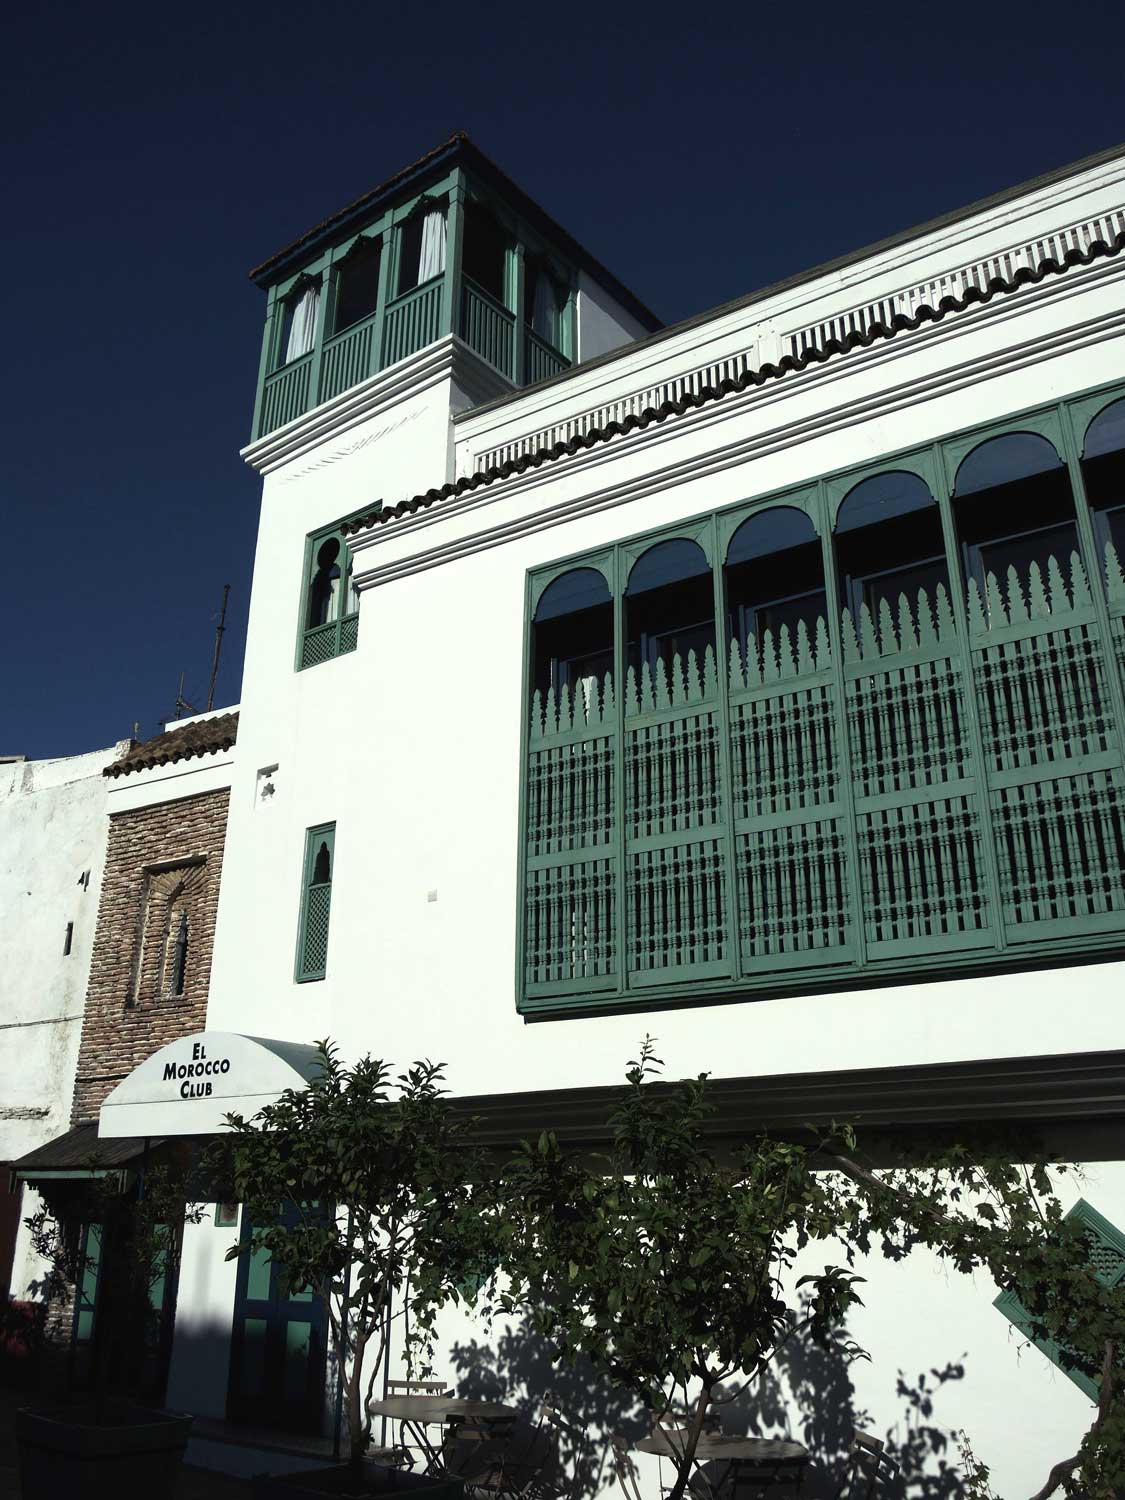 View of El Morocco Club on Place de Tabor